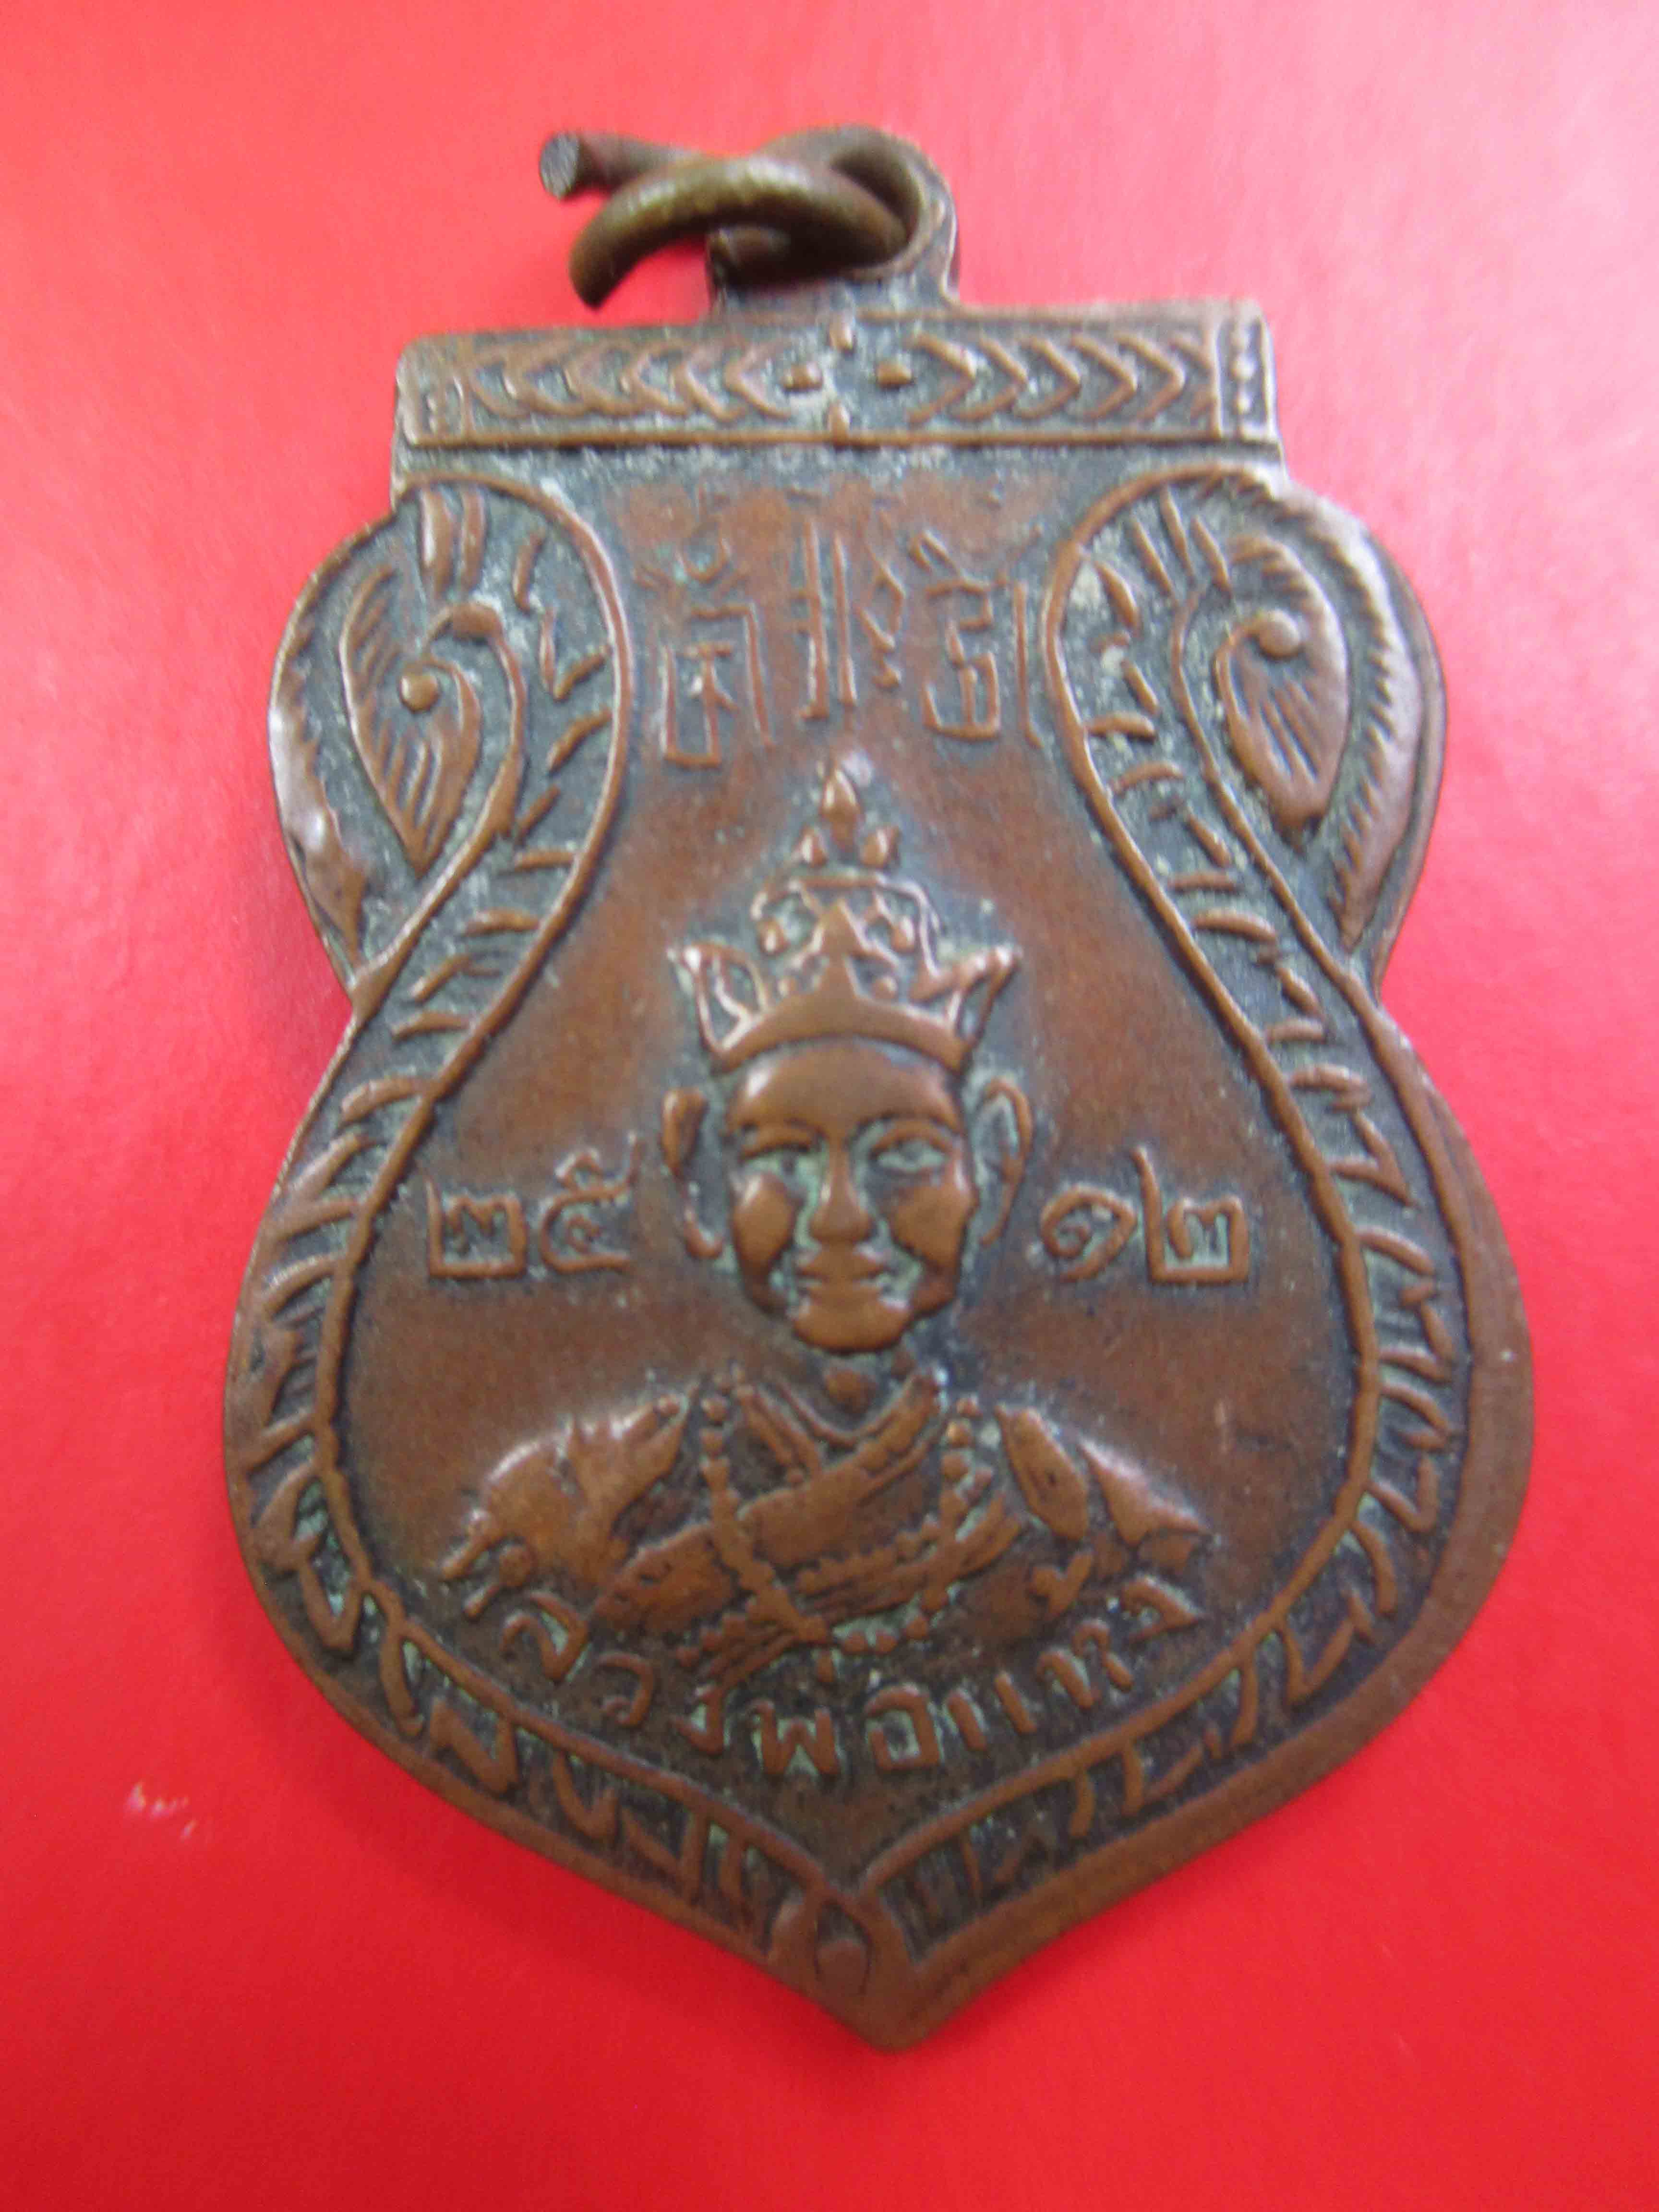  เหรียญอาจารย์โหพัฒหลังหลวงพ่อแห้ง จ.กาญจนบุรี ปี 2512 